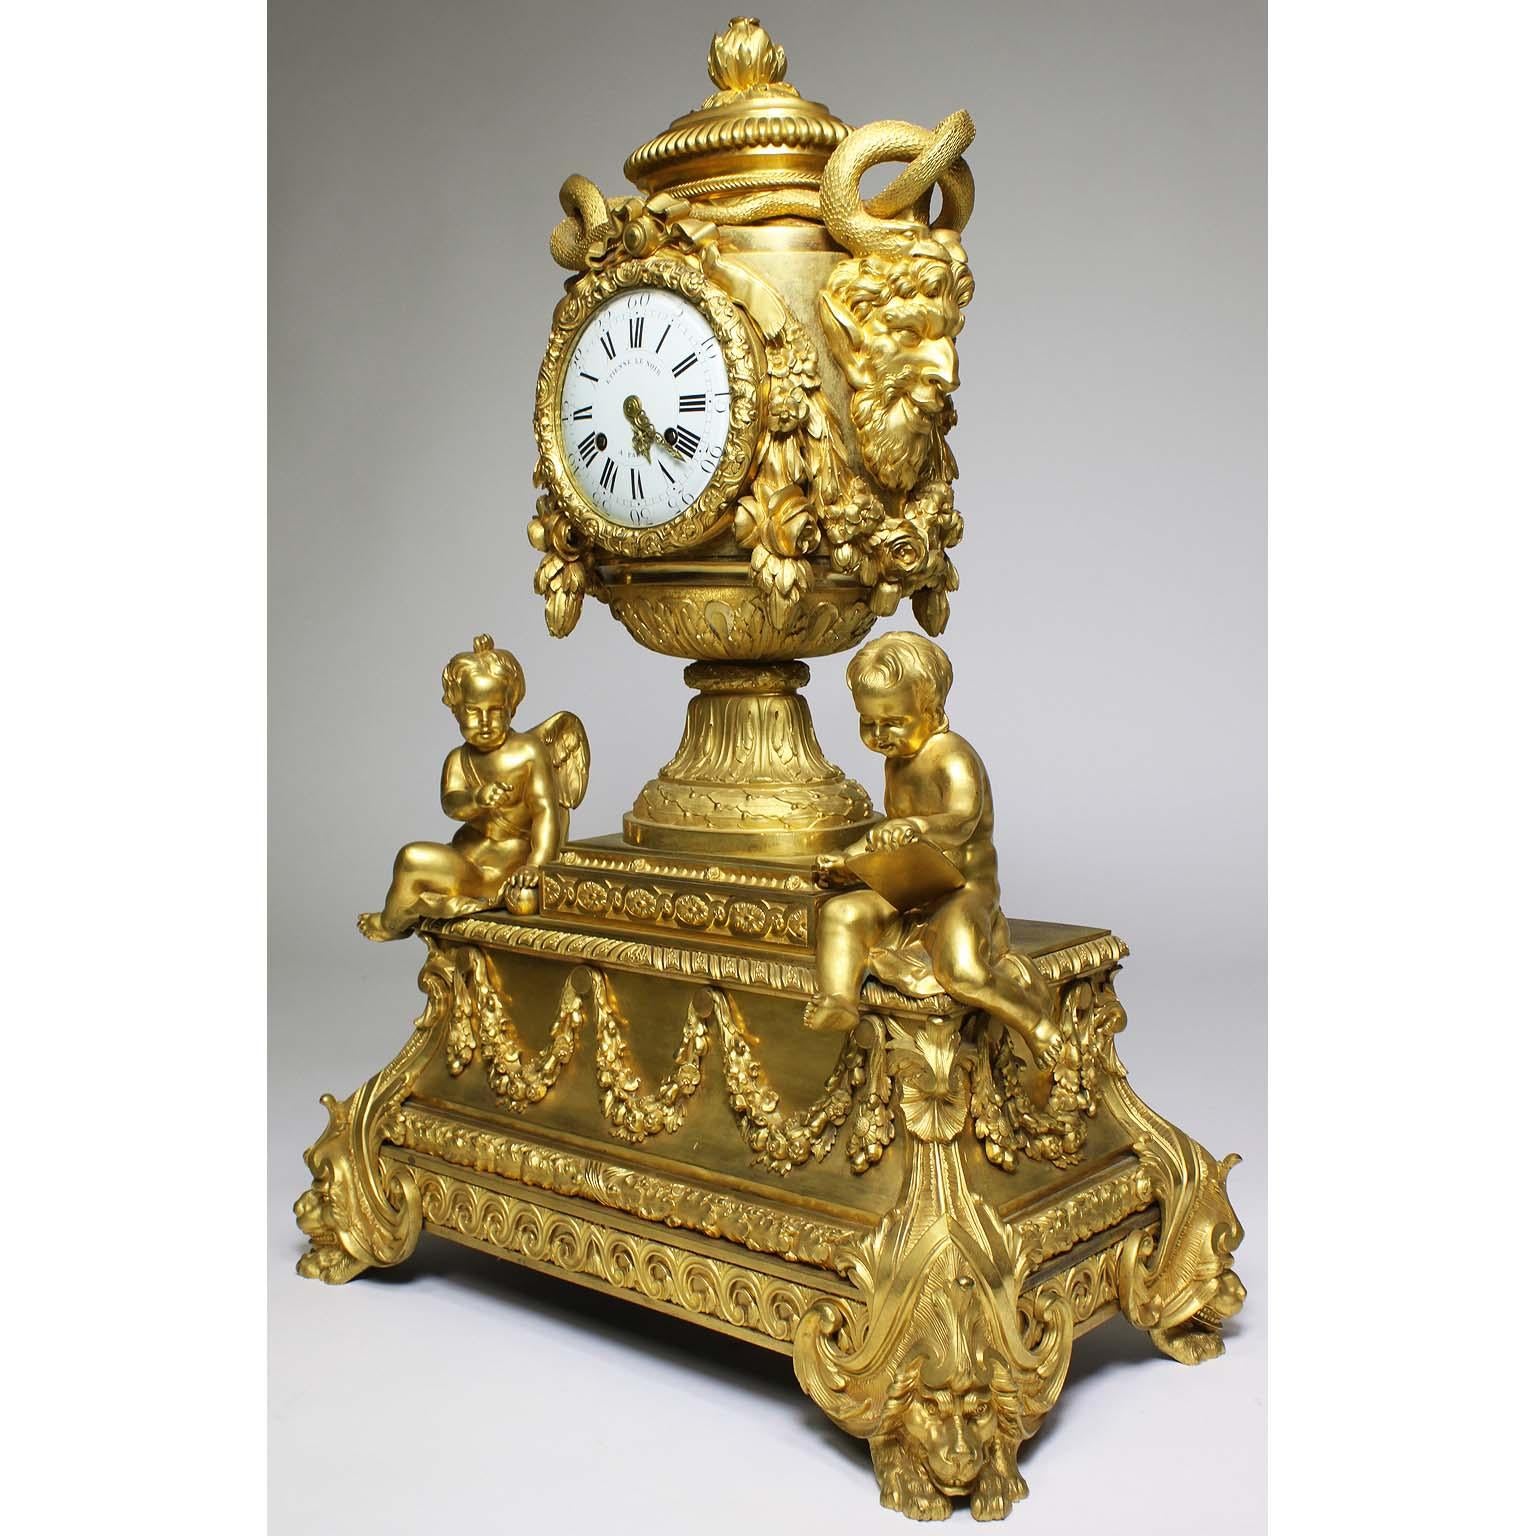 Ein sehr feiner und palastartiger französischer Louis XVI-Stil figurale vergoldete Bronze Kaminsimsuhr. Das vasenförmige Gehäuse ist mit einem Granatapfel-Gussknauf bekrönt und wird von großen Satyrmaskengriffen flankiert, die mit verschlungenen